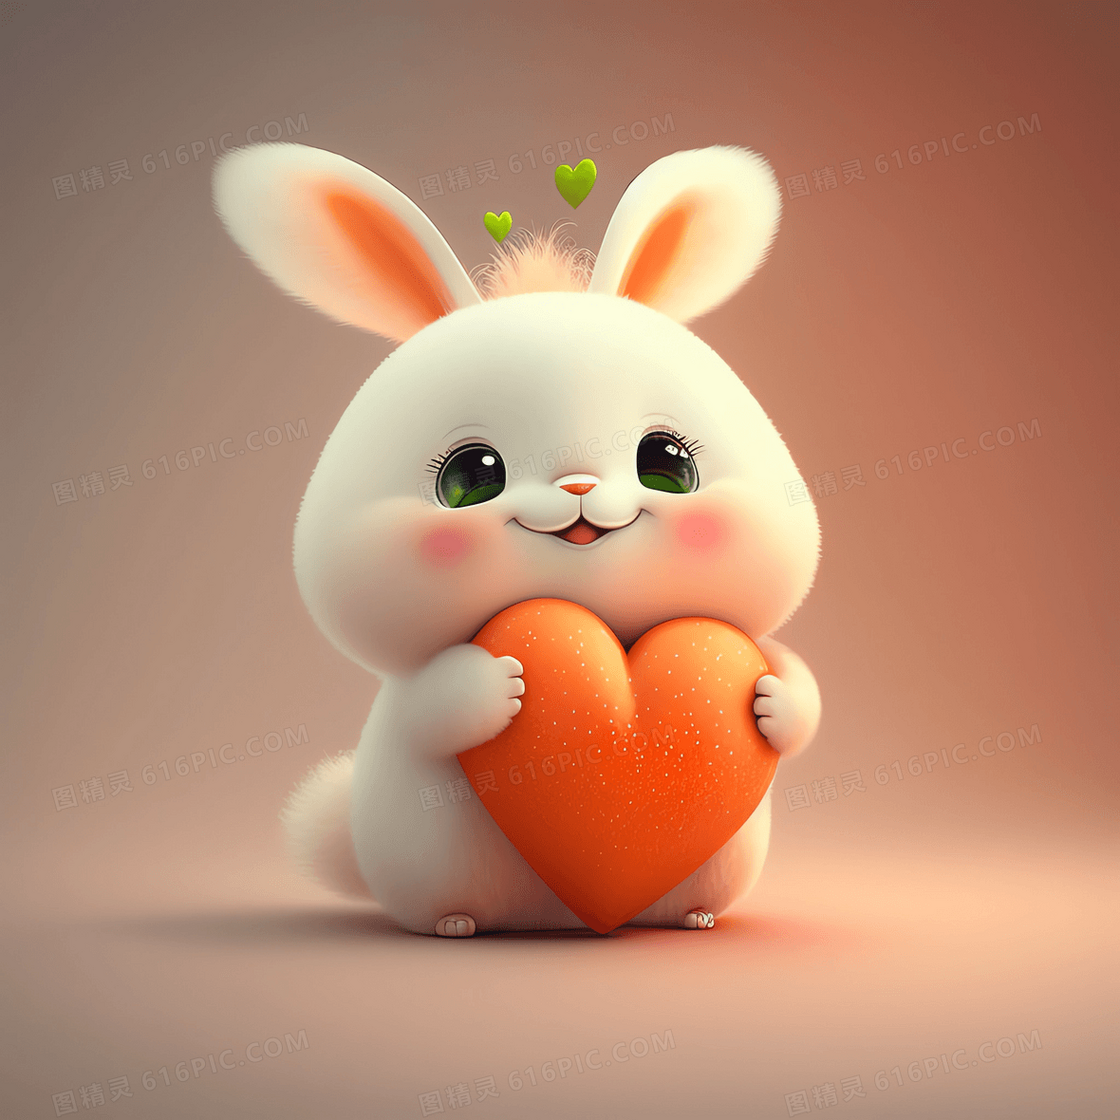 捧着胡萝卜爱心的可爱小兔子